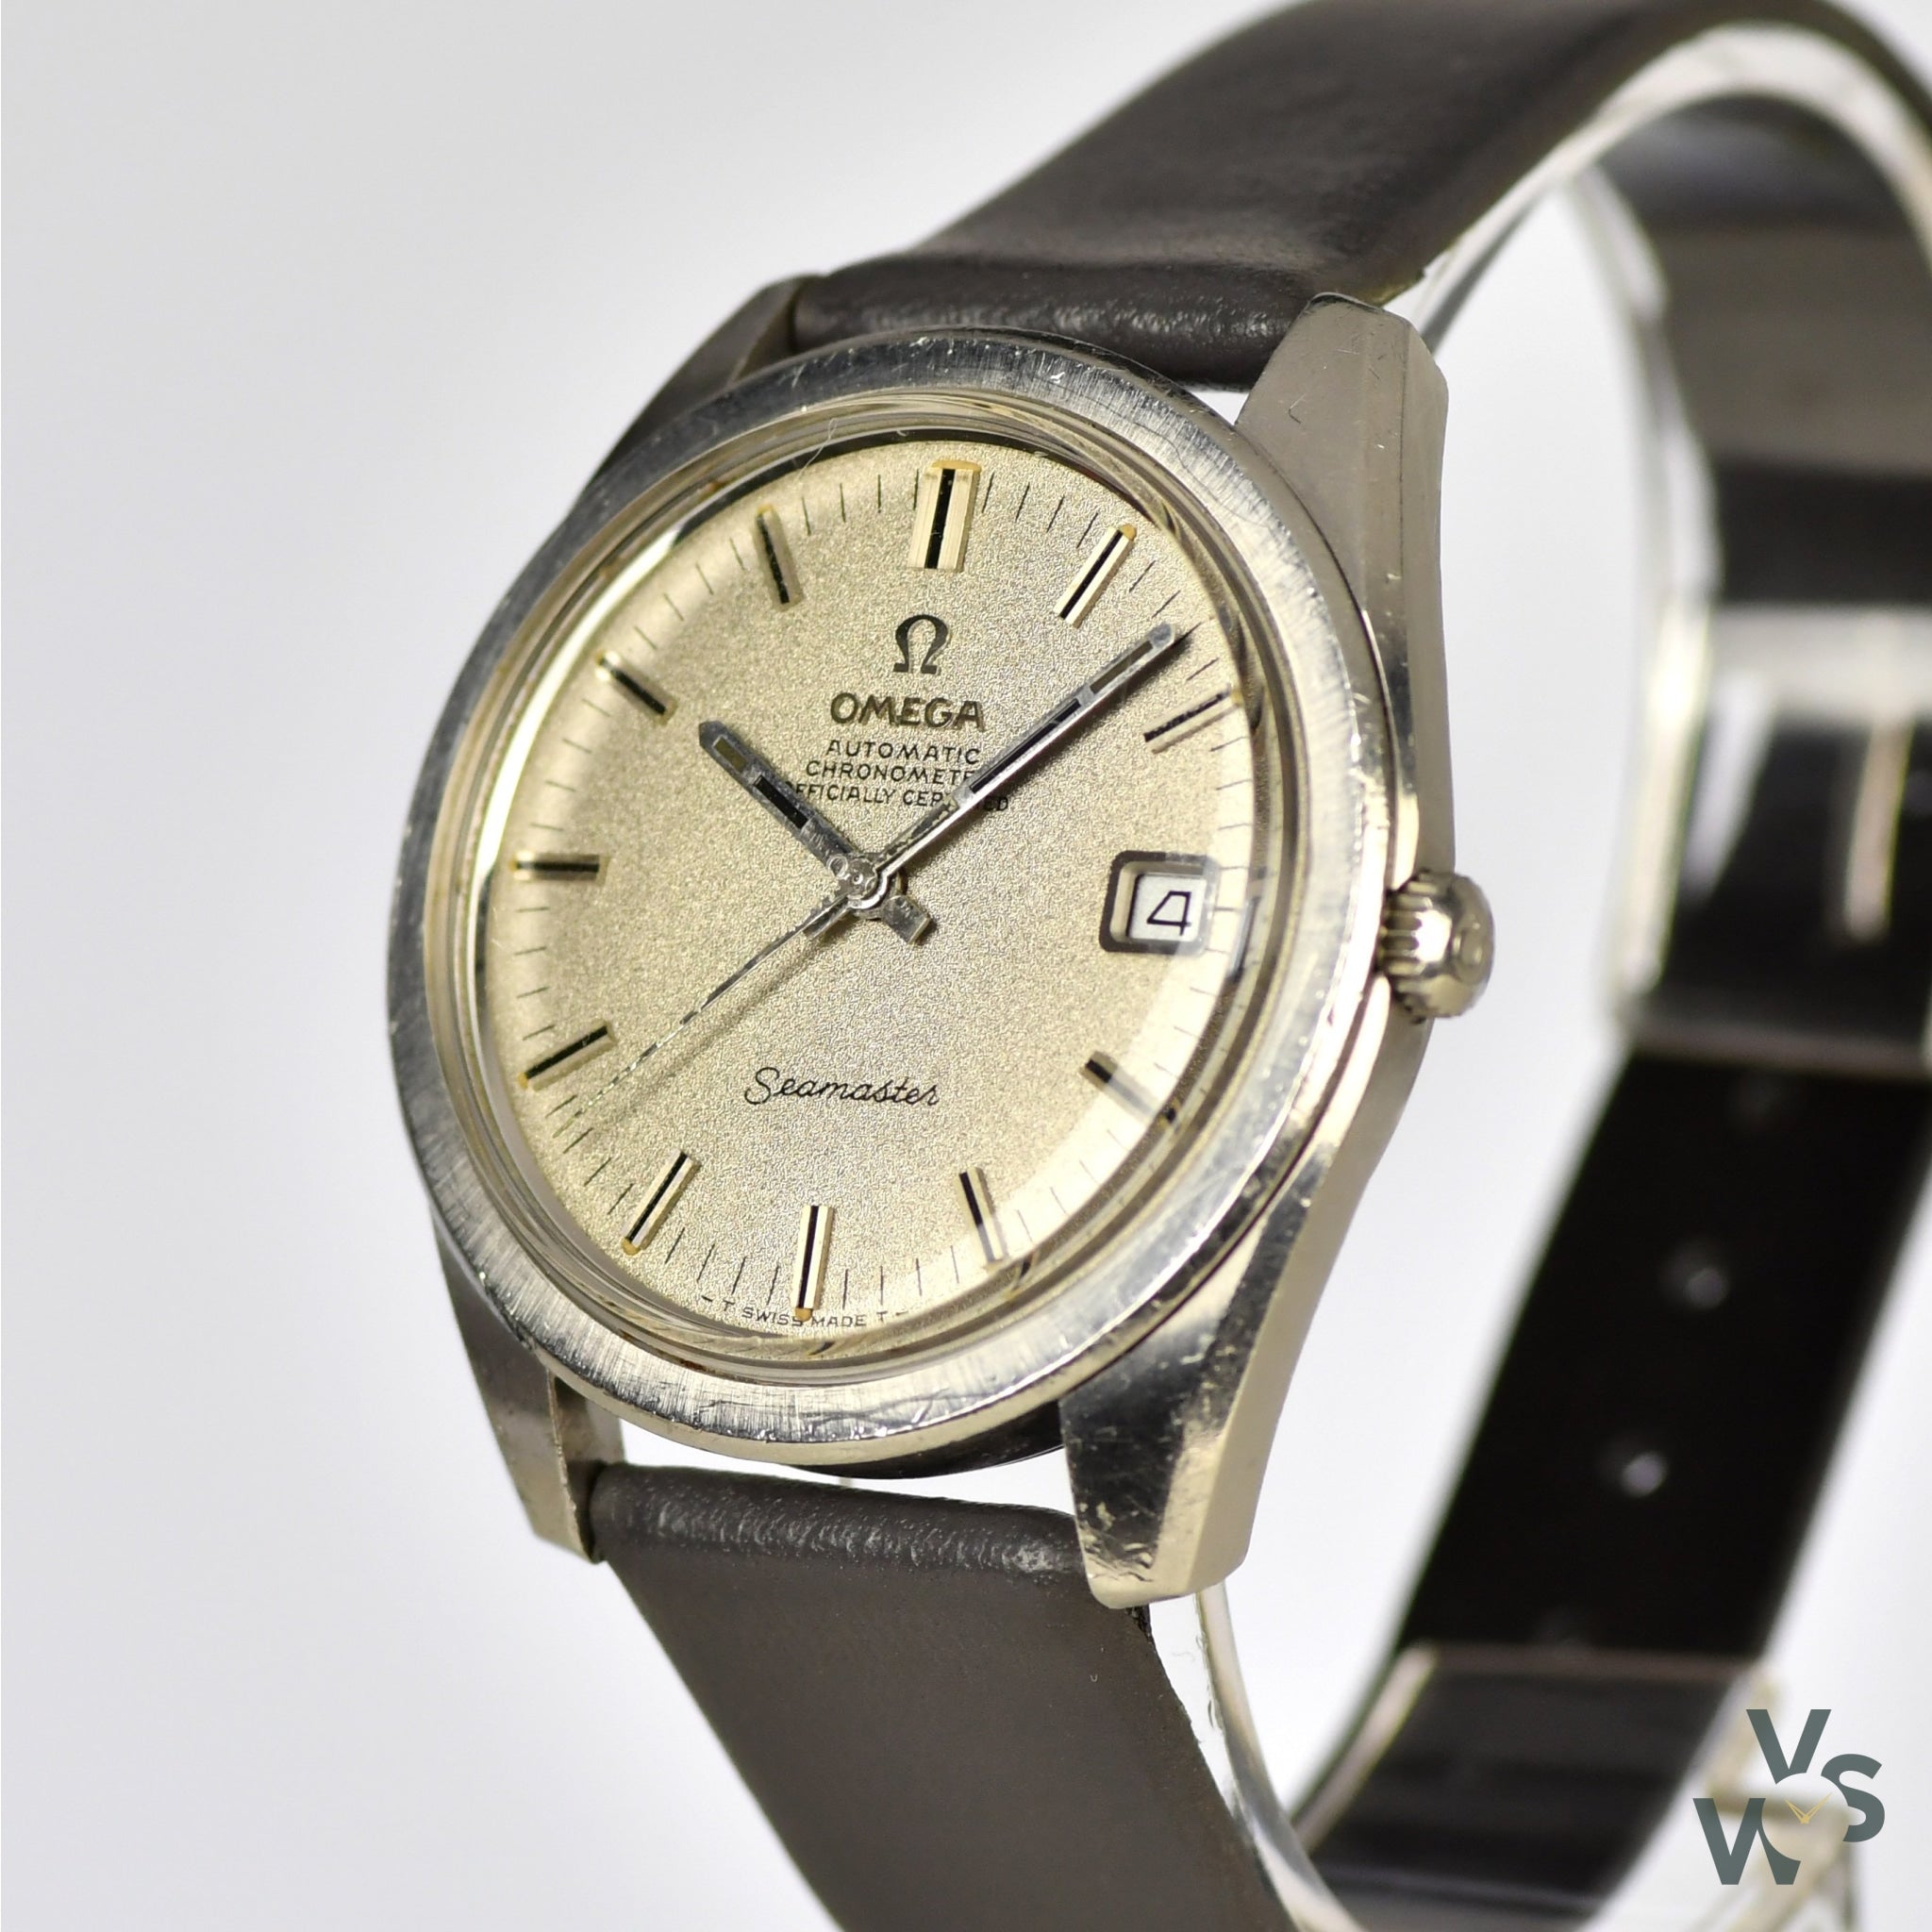 Omega Seamaster 168.022-166.028 c.1968 - Automatic - Chronometer 